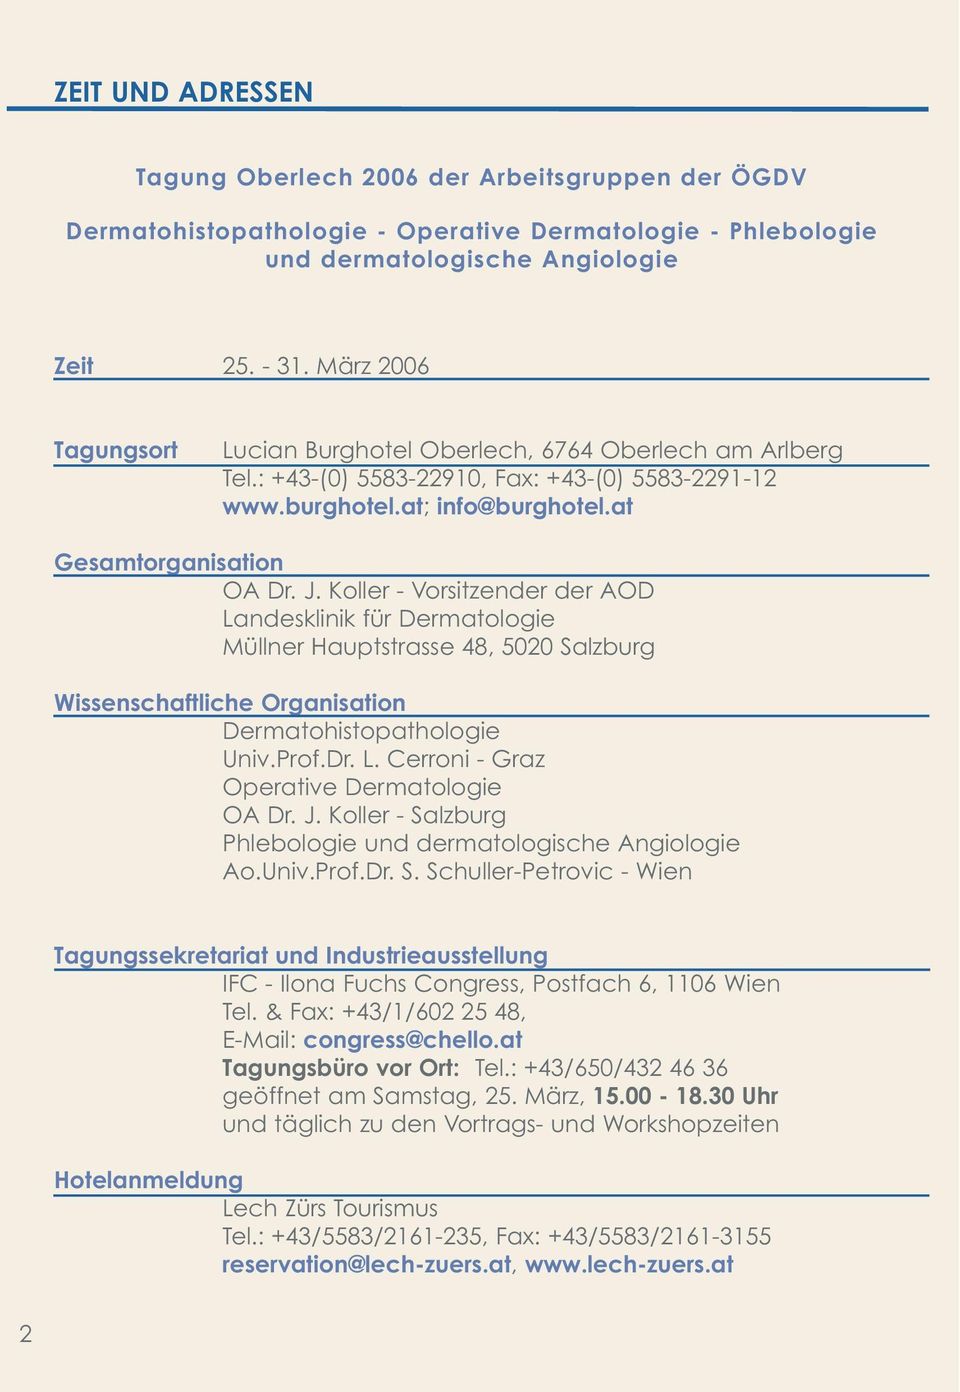 Koller - Vorsitzender der AOD Landesklinik für Dermatologie Müllner Hauptstrasse 48, 5020 Salzburg Wissenschaftliche Organisation Dermatohistopathologie Univ.Prof.Dr. L. Cerroni - Graz Operative Dermatologie OA Dr.